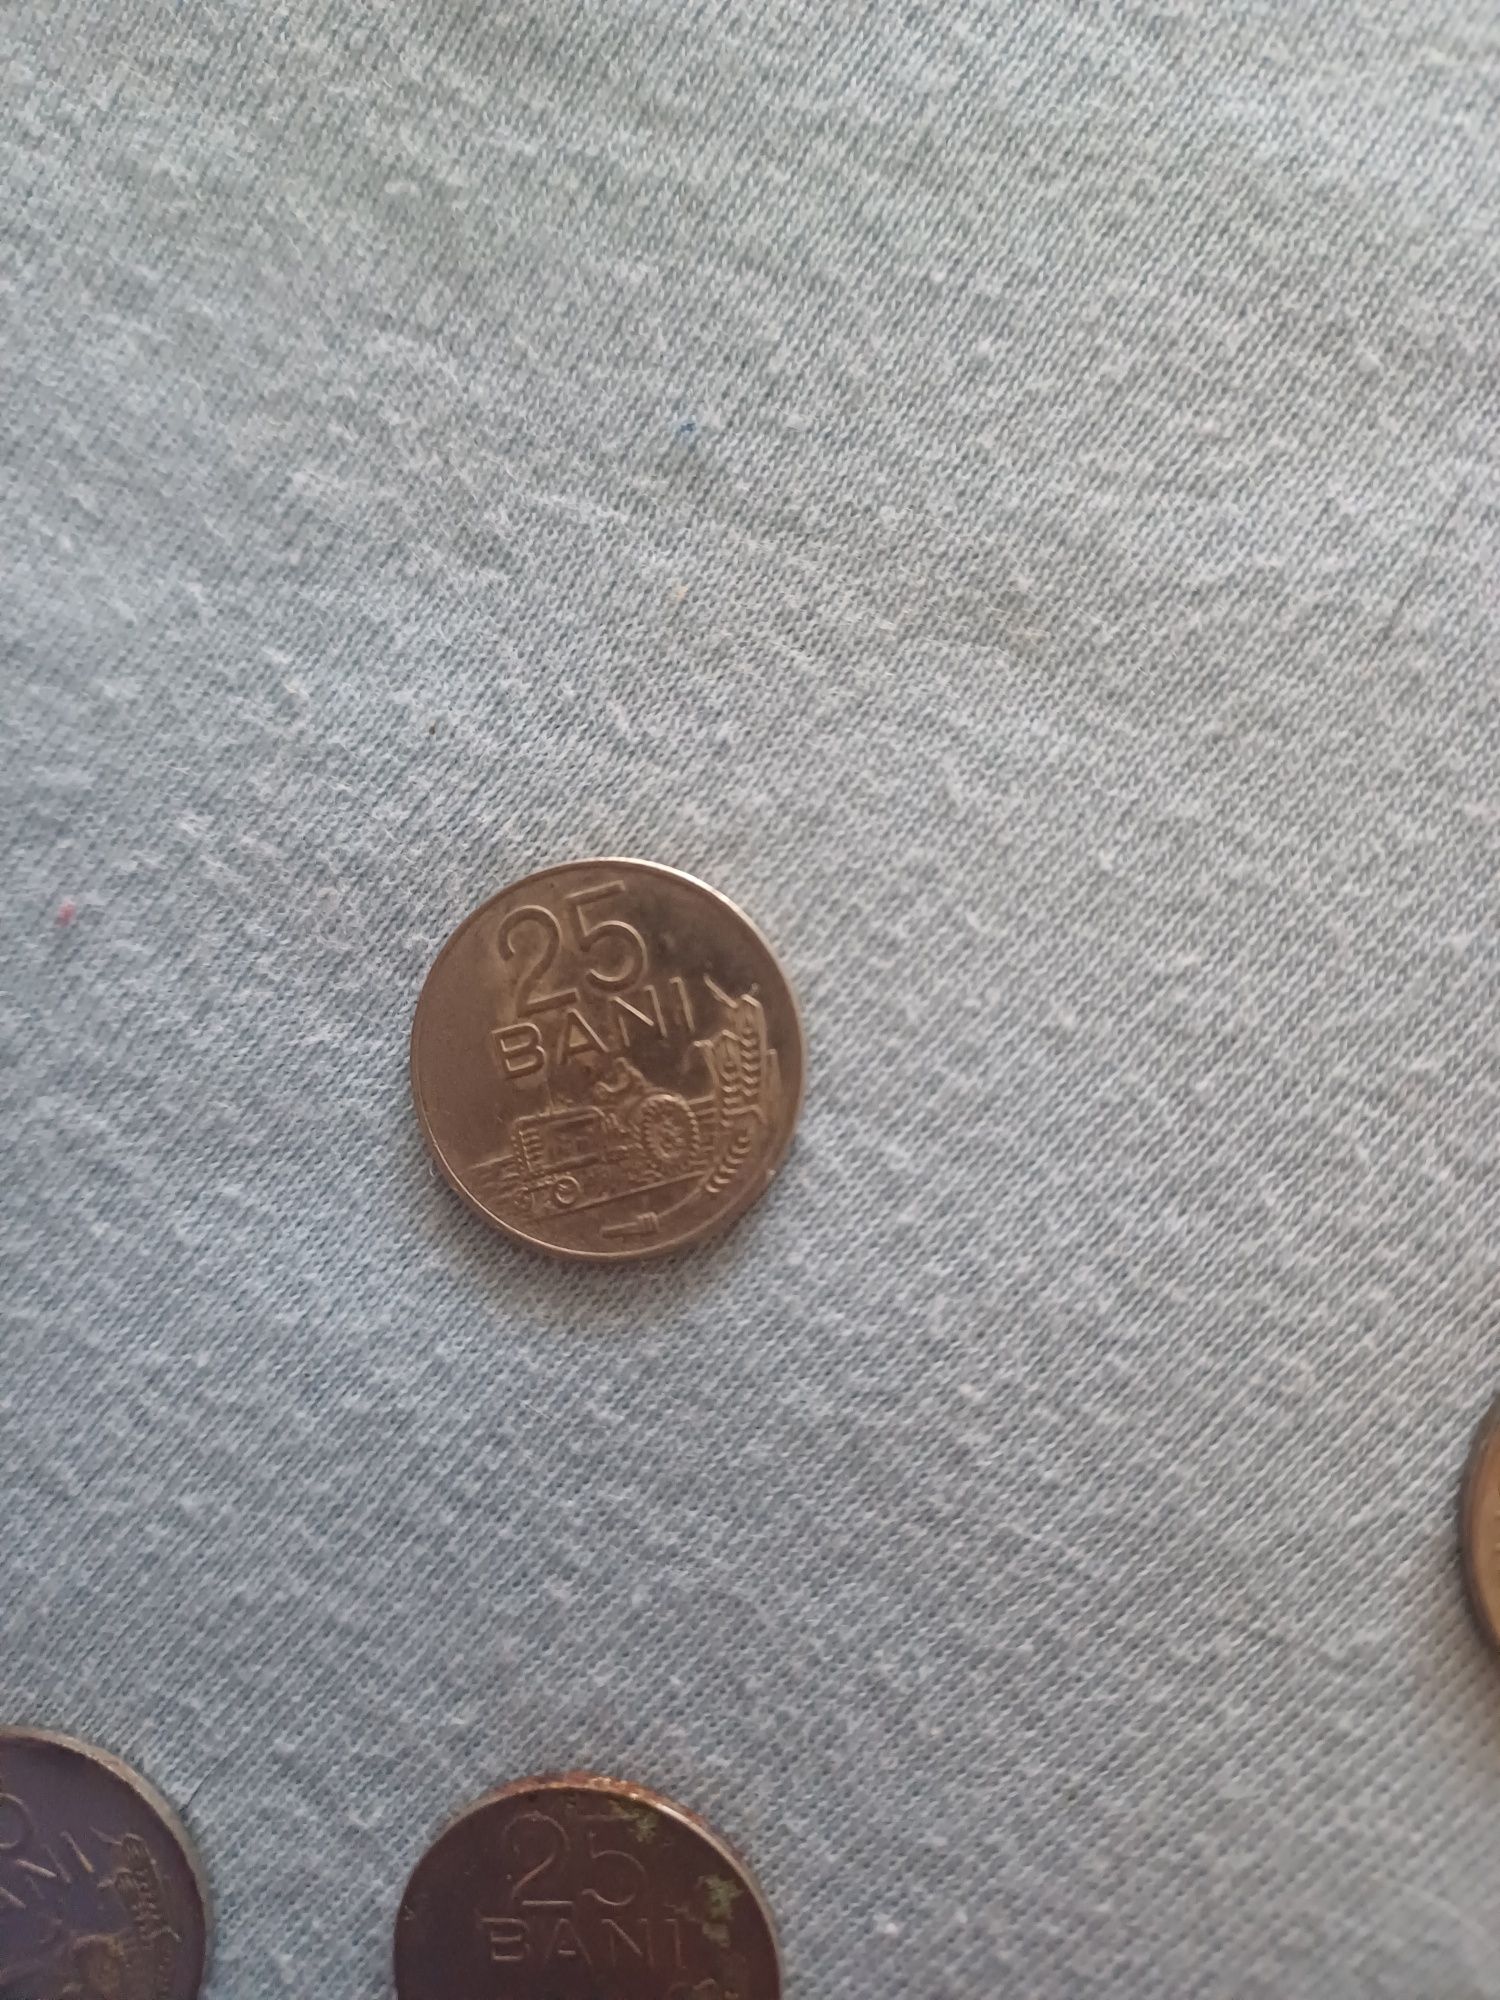 Vând monede vechi pentru colectionari. An 1963 -2004.